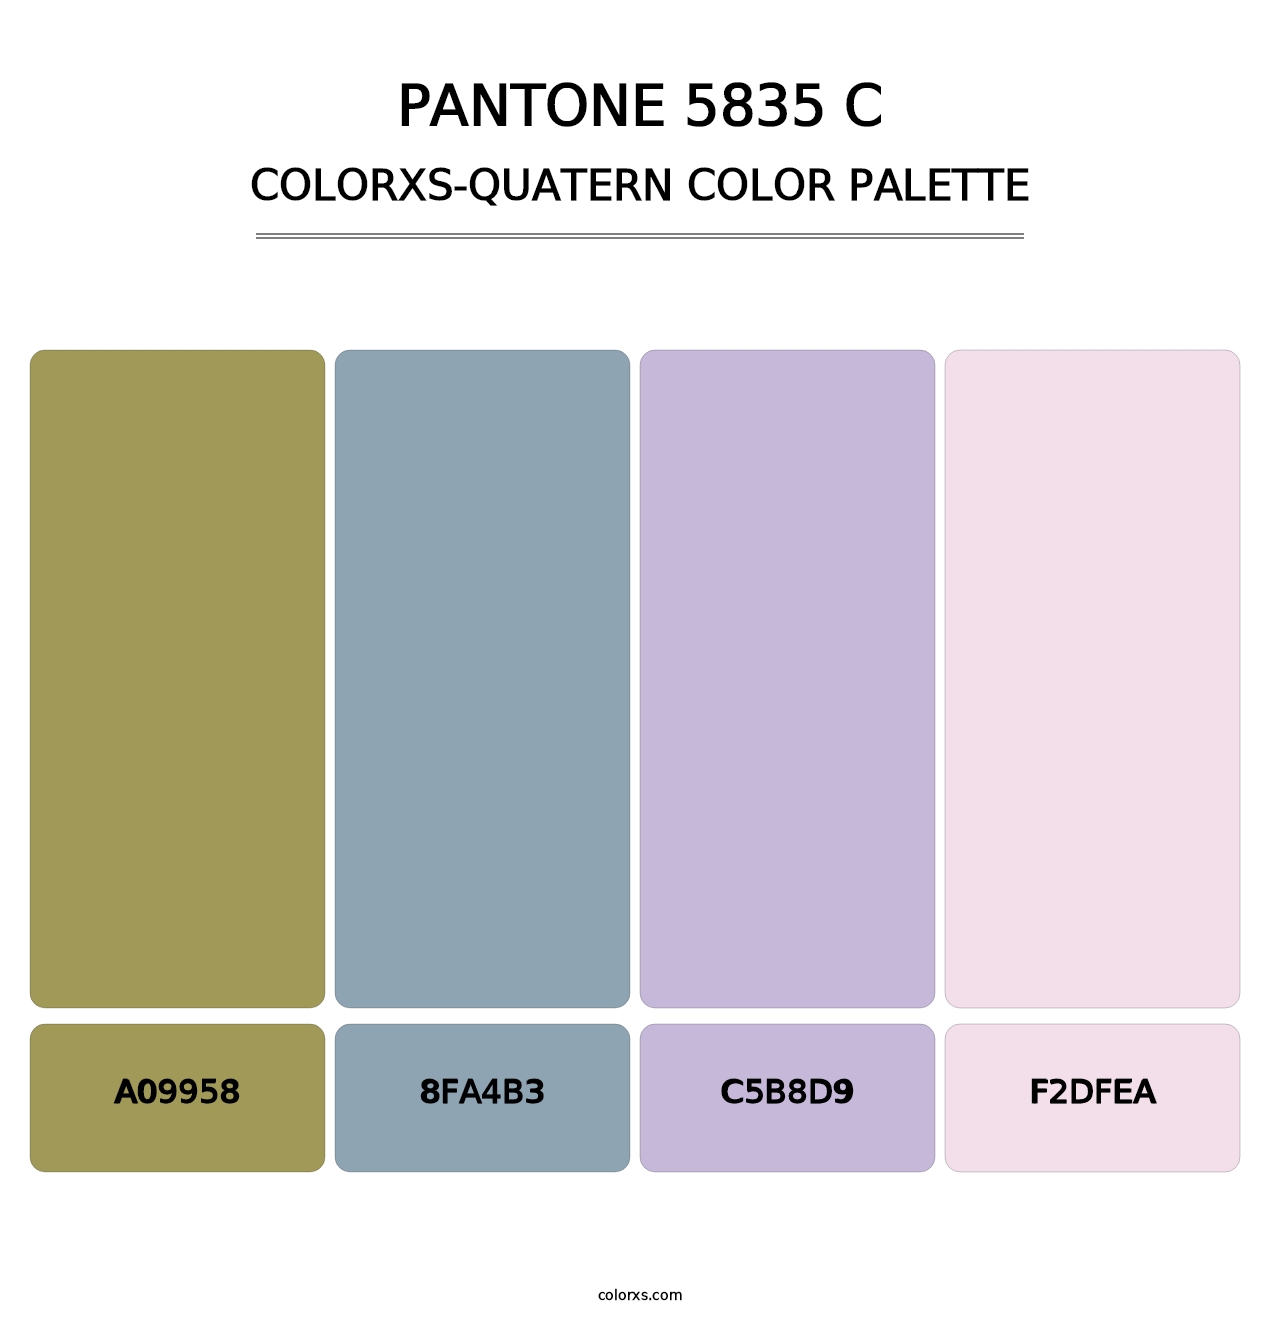 PANTONE 5835 C - Colorxs Quatern Palette